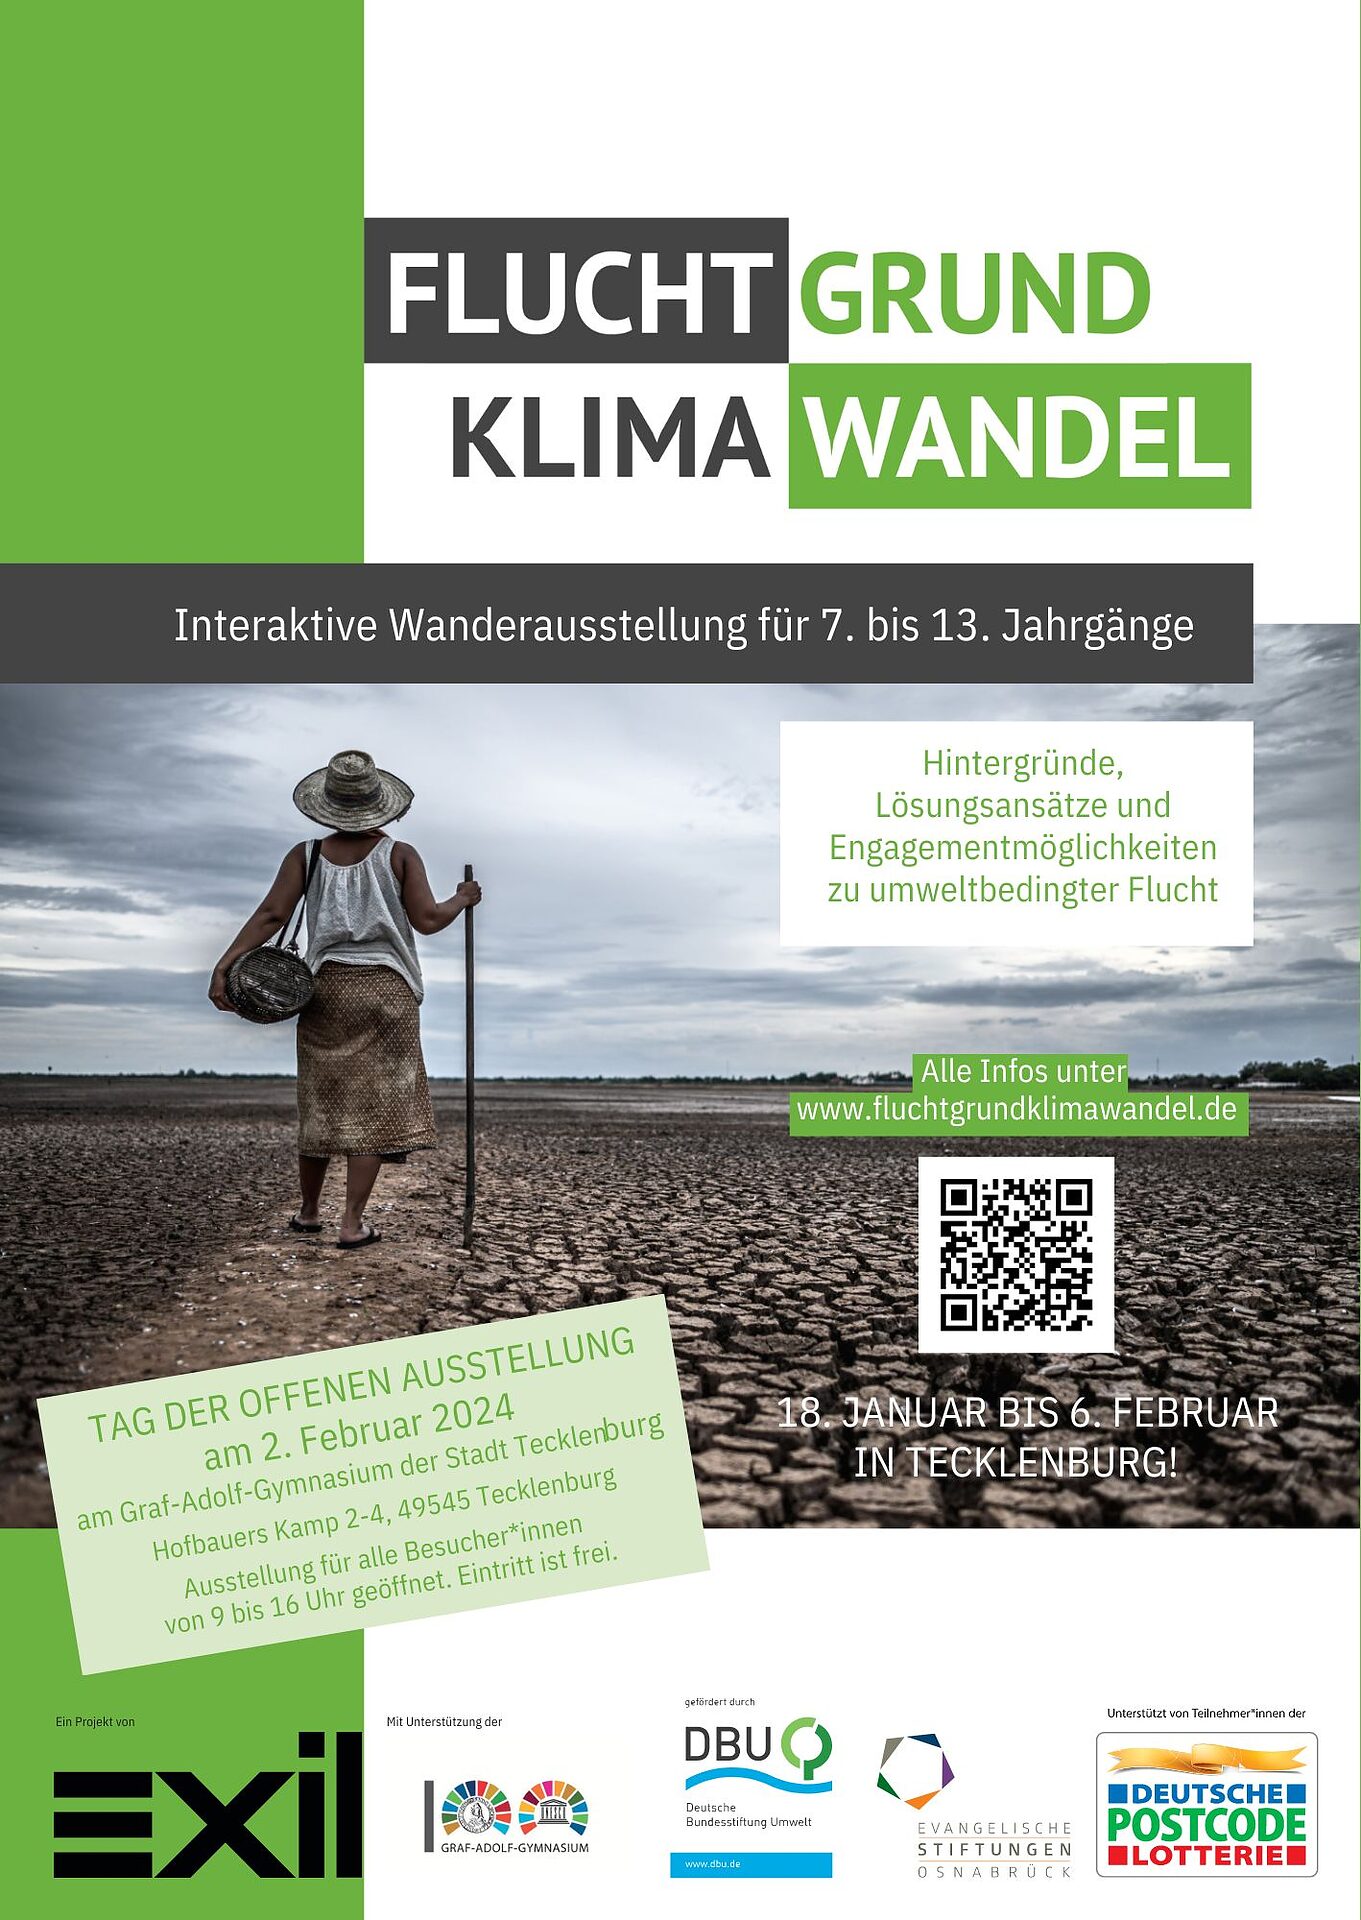 Nachhaltigkeit zum Anfassen: Bundesweite Ausstellung zu klimabedingter Flucht